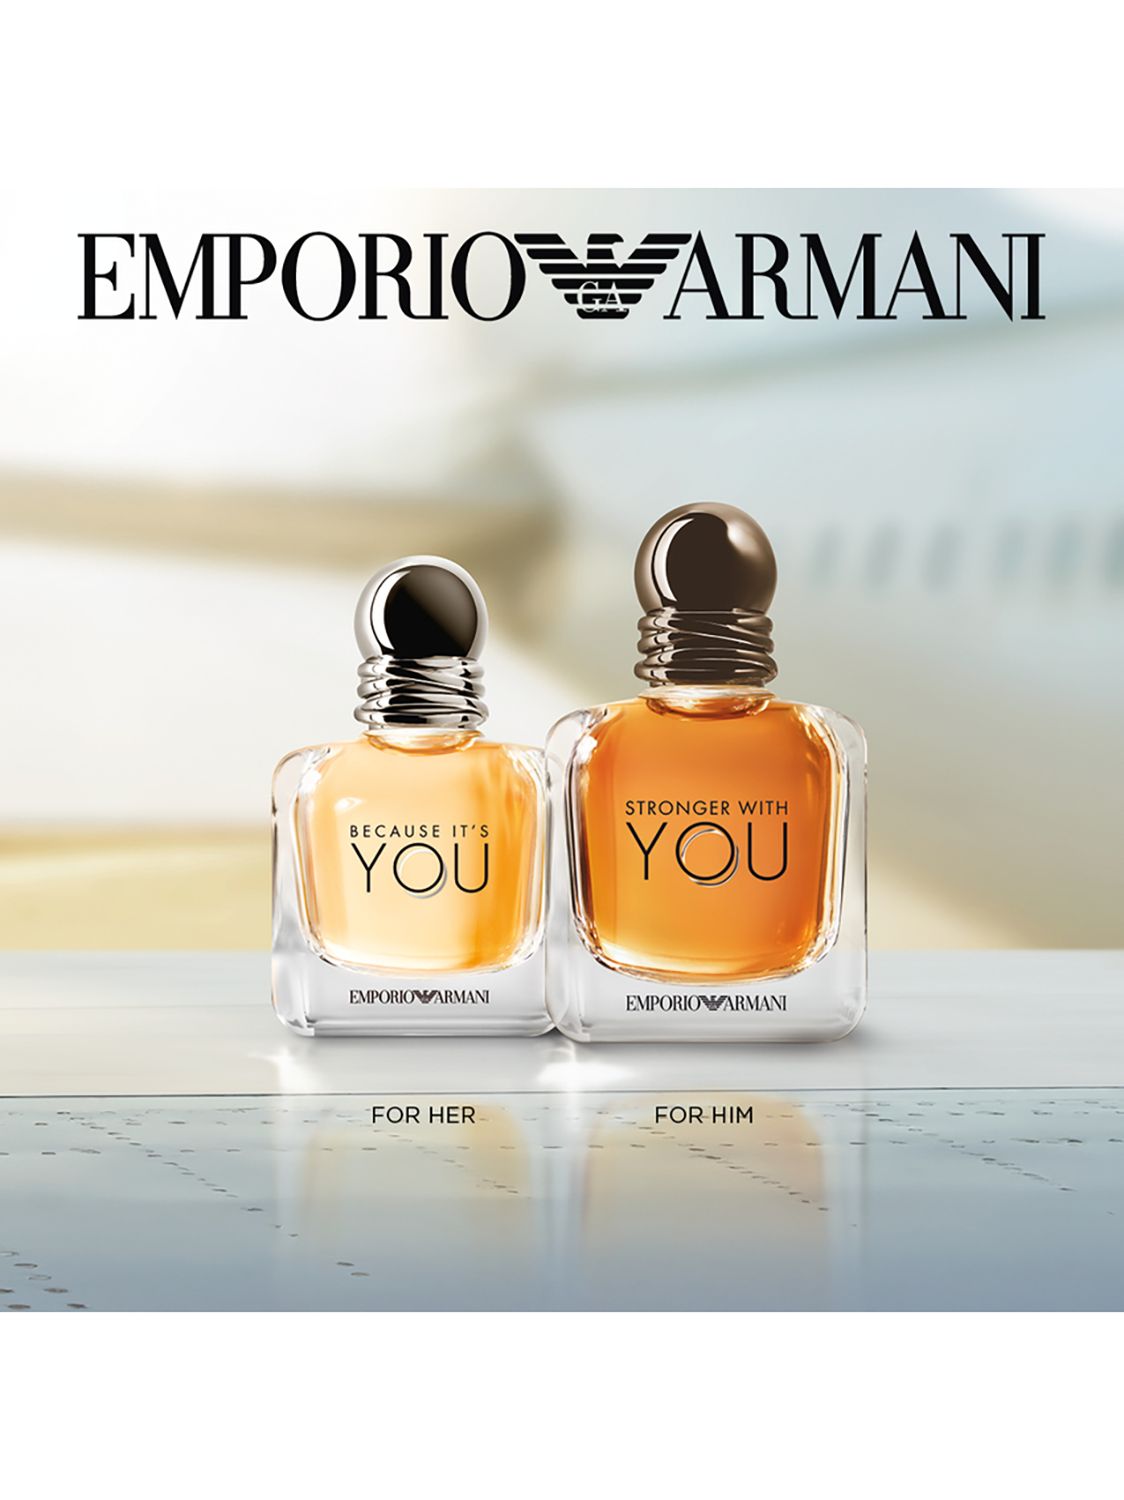 giorgio armani women's fragrance